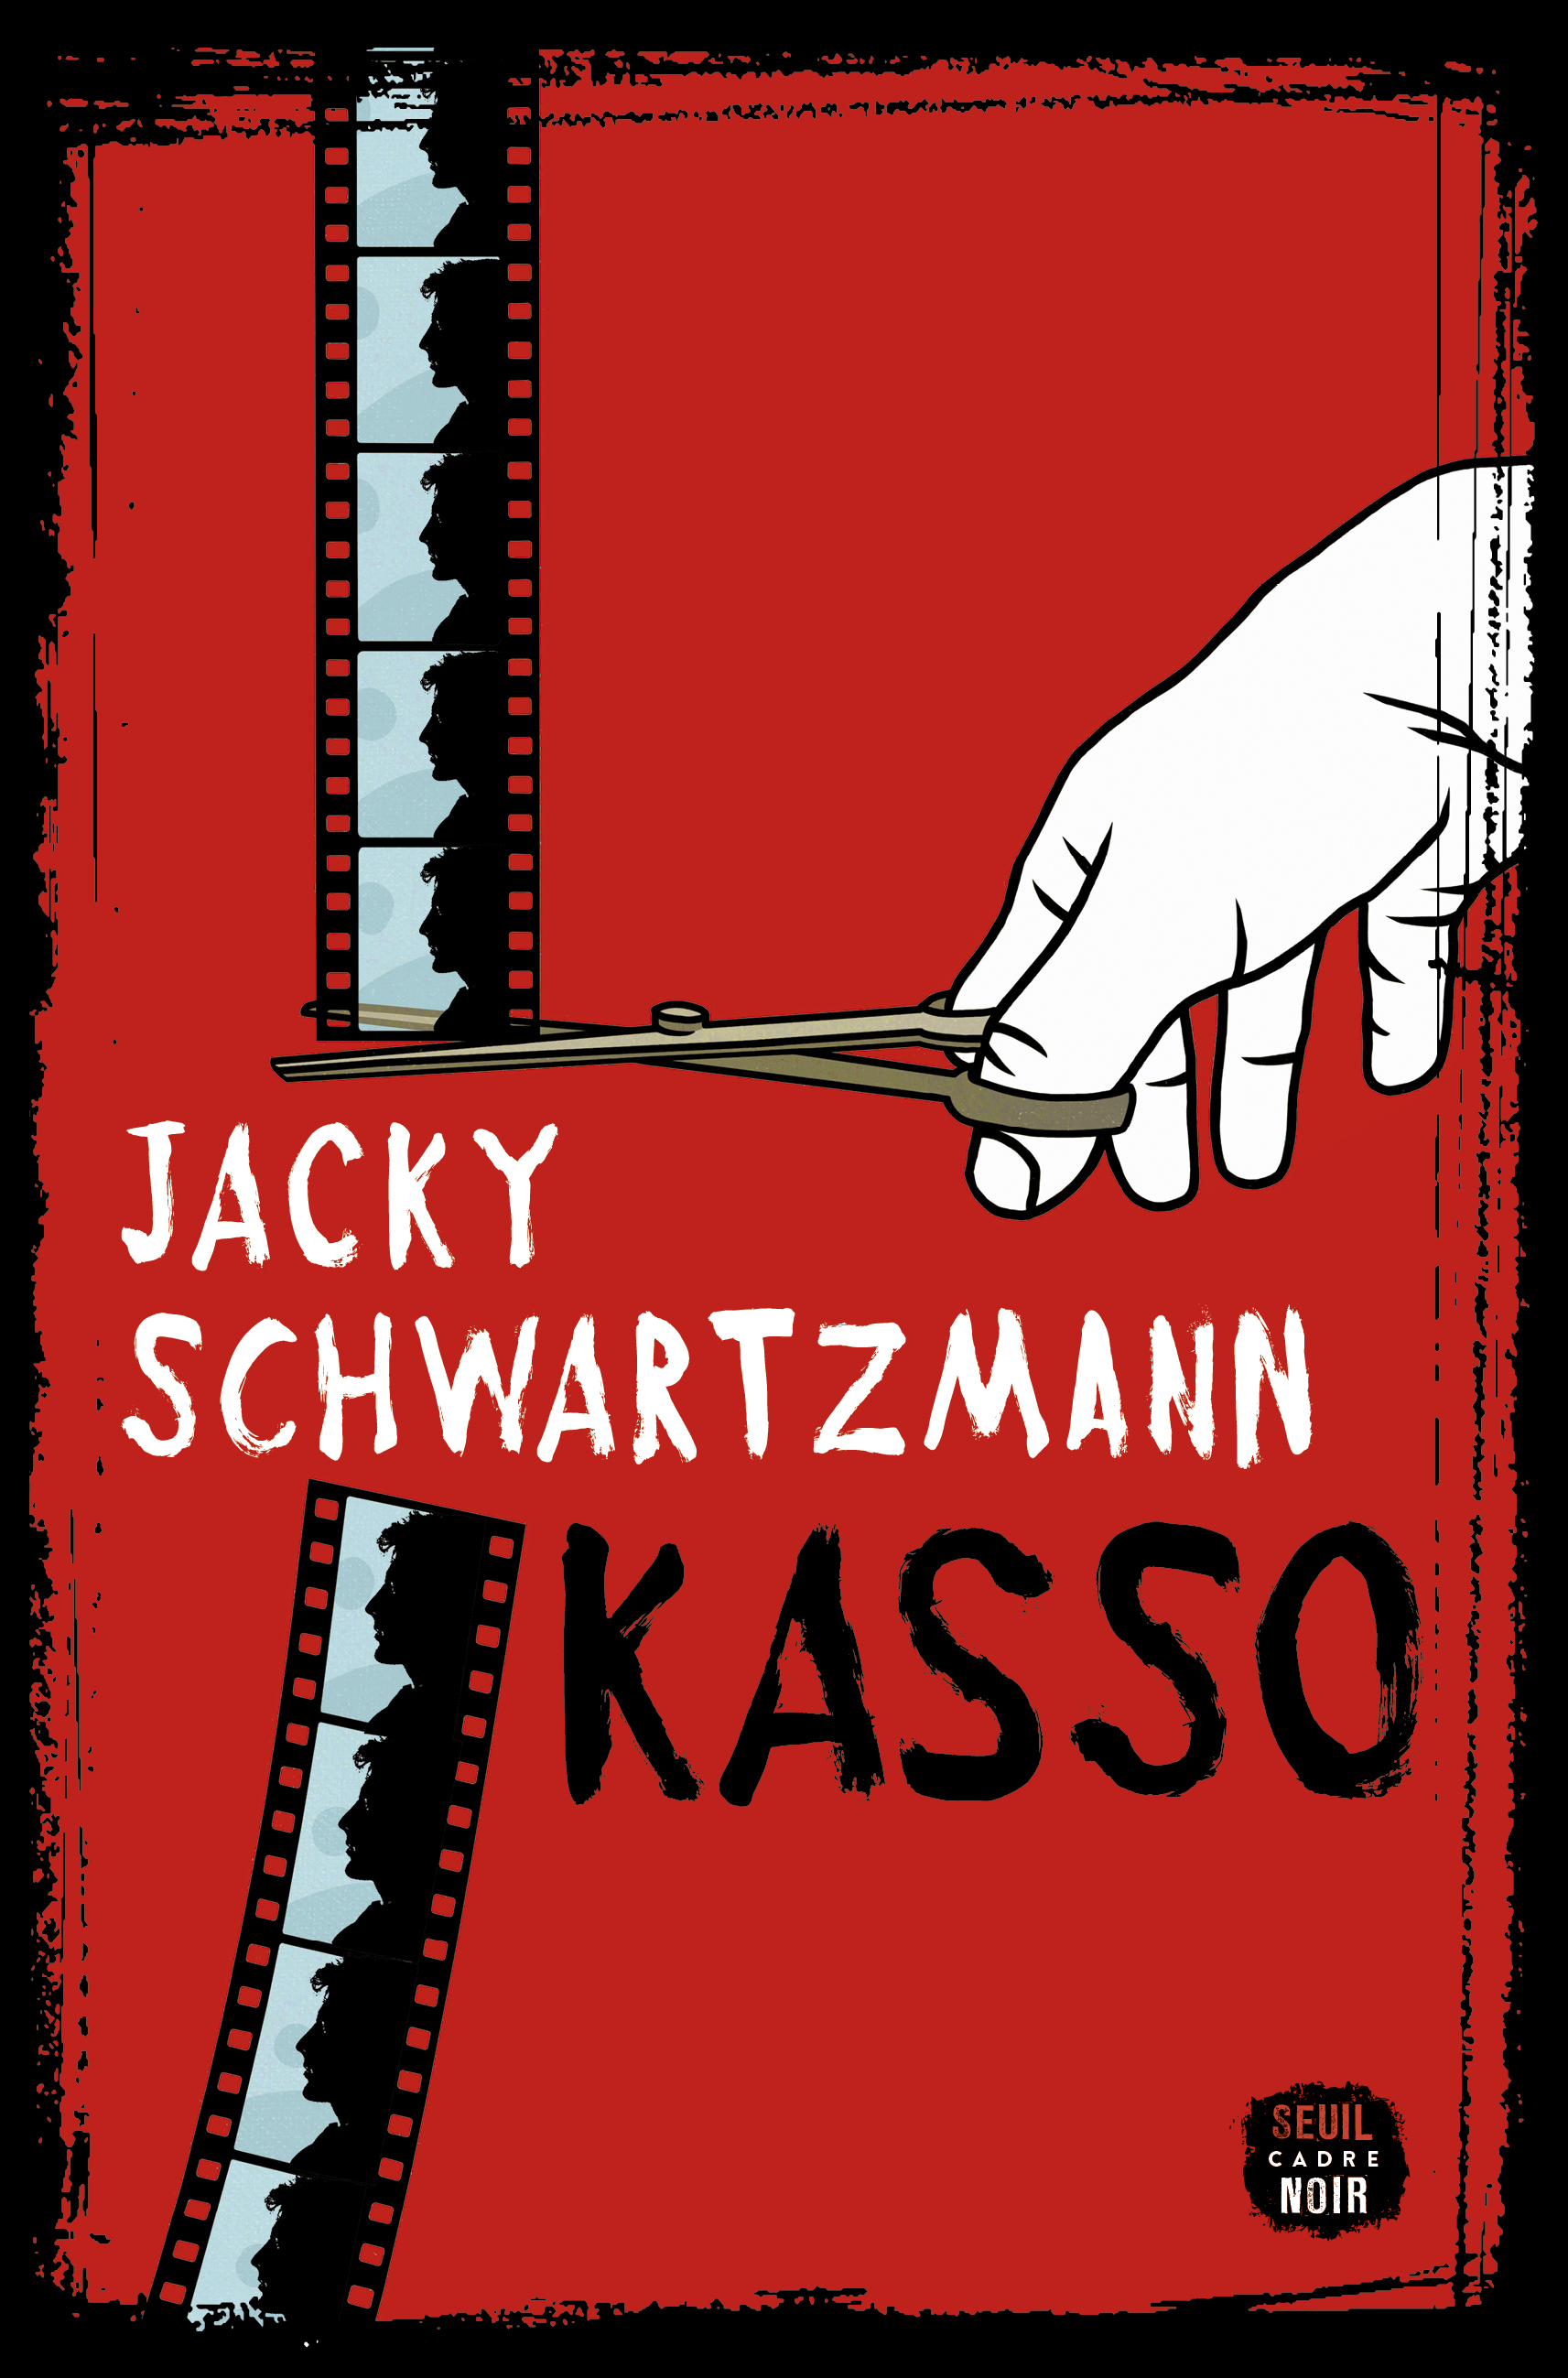 Afficher "Kasso"